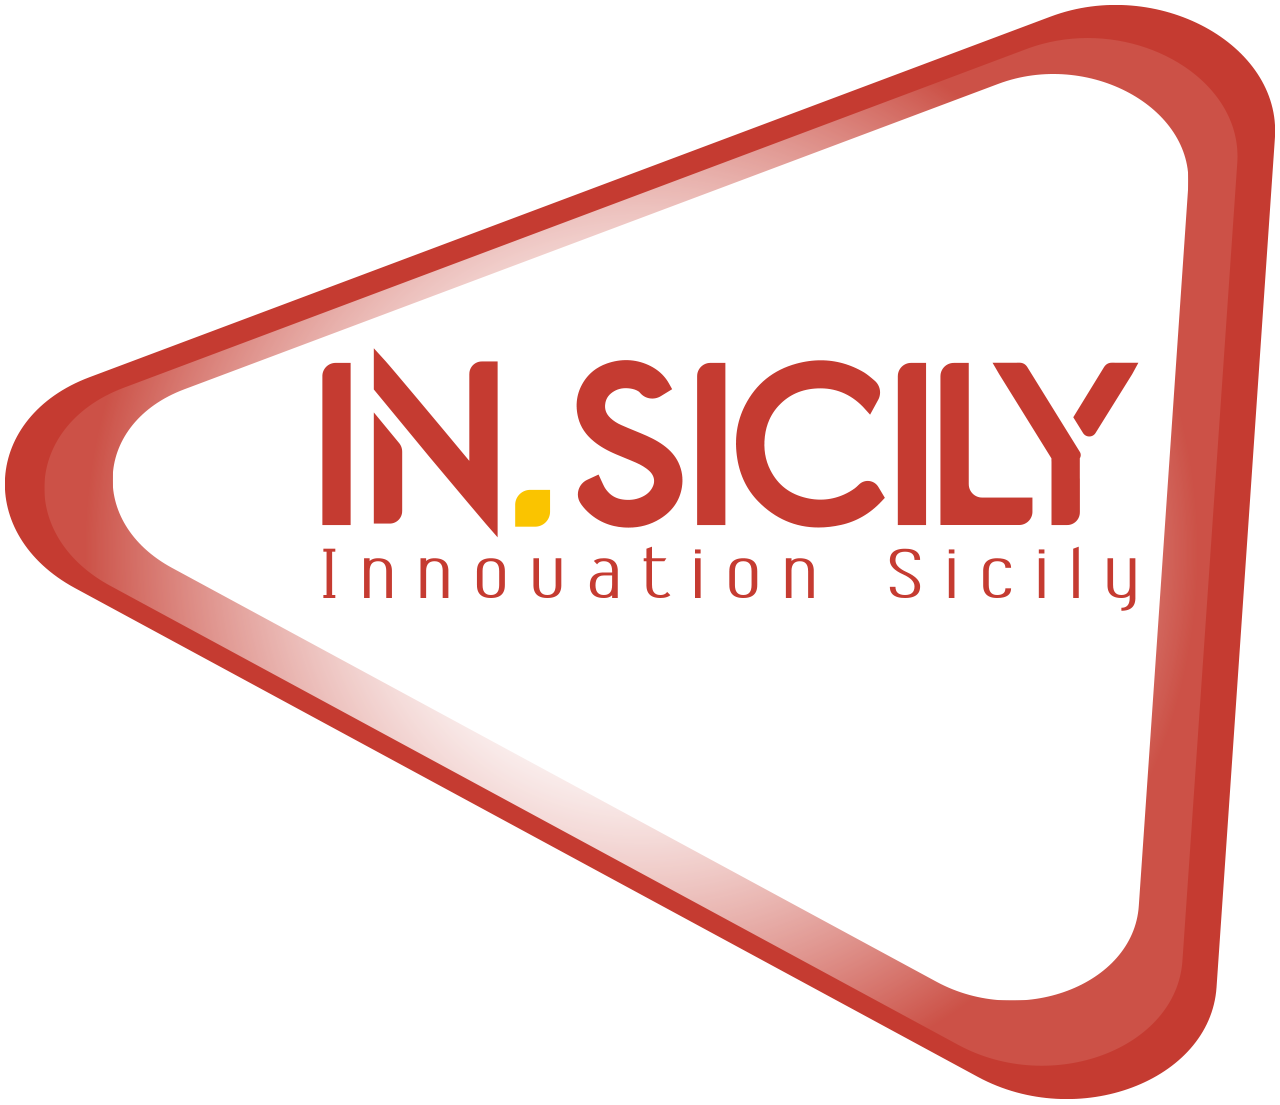 IN.SICILY - Innovation Sicily - 05.08.2020 - Comunicazione tra 118 e ospedali, aggiornamento nel bacino Catania-Ragusa-Siracusa